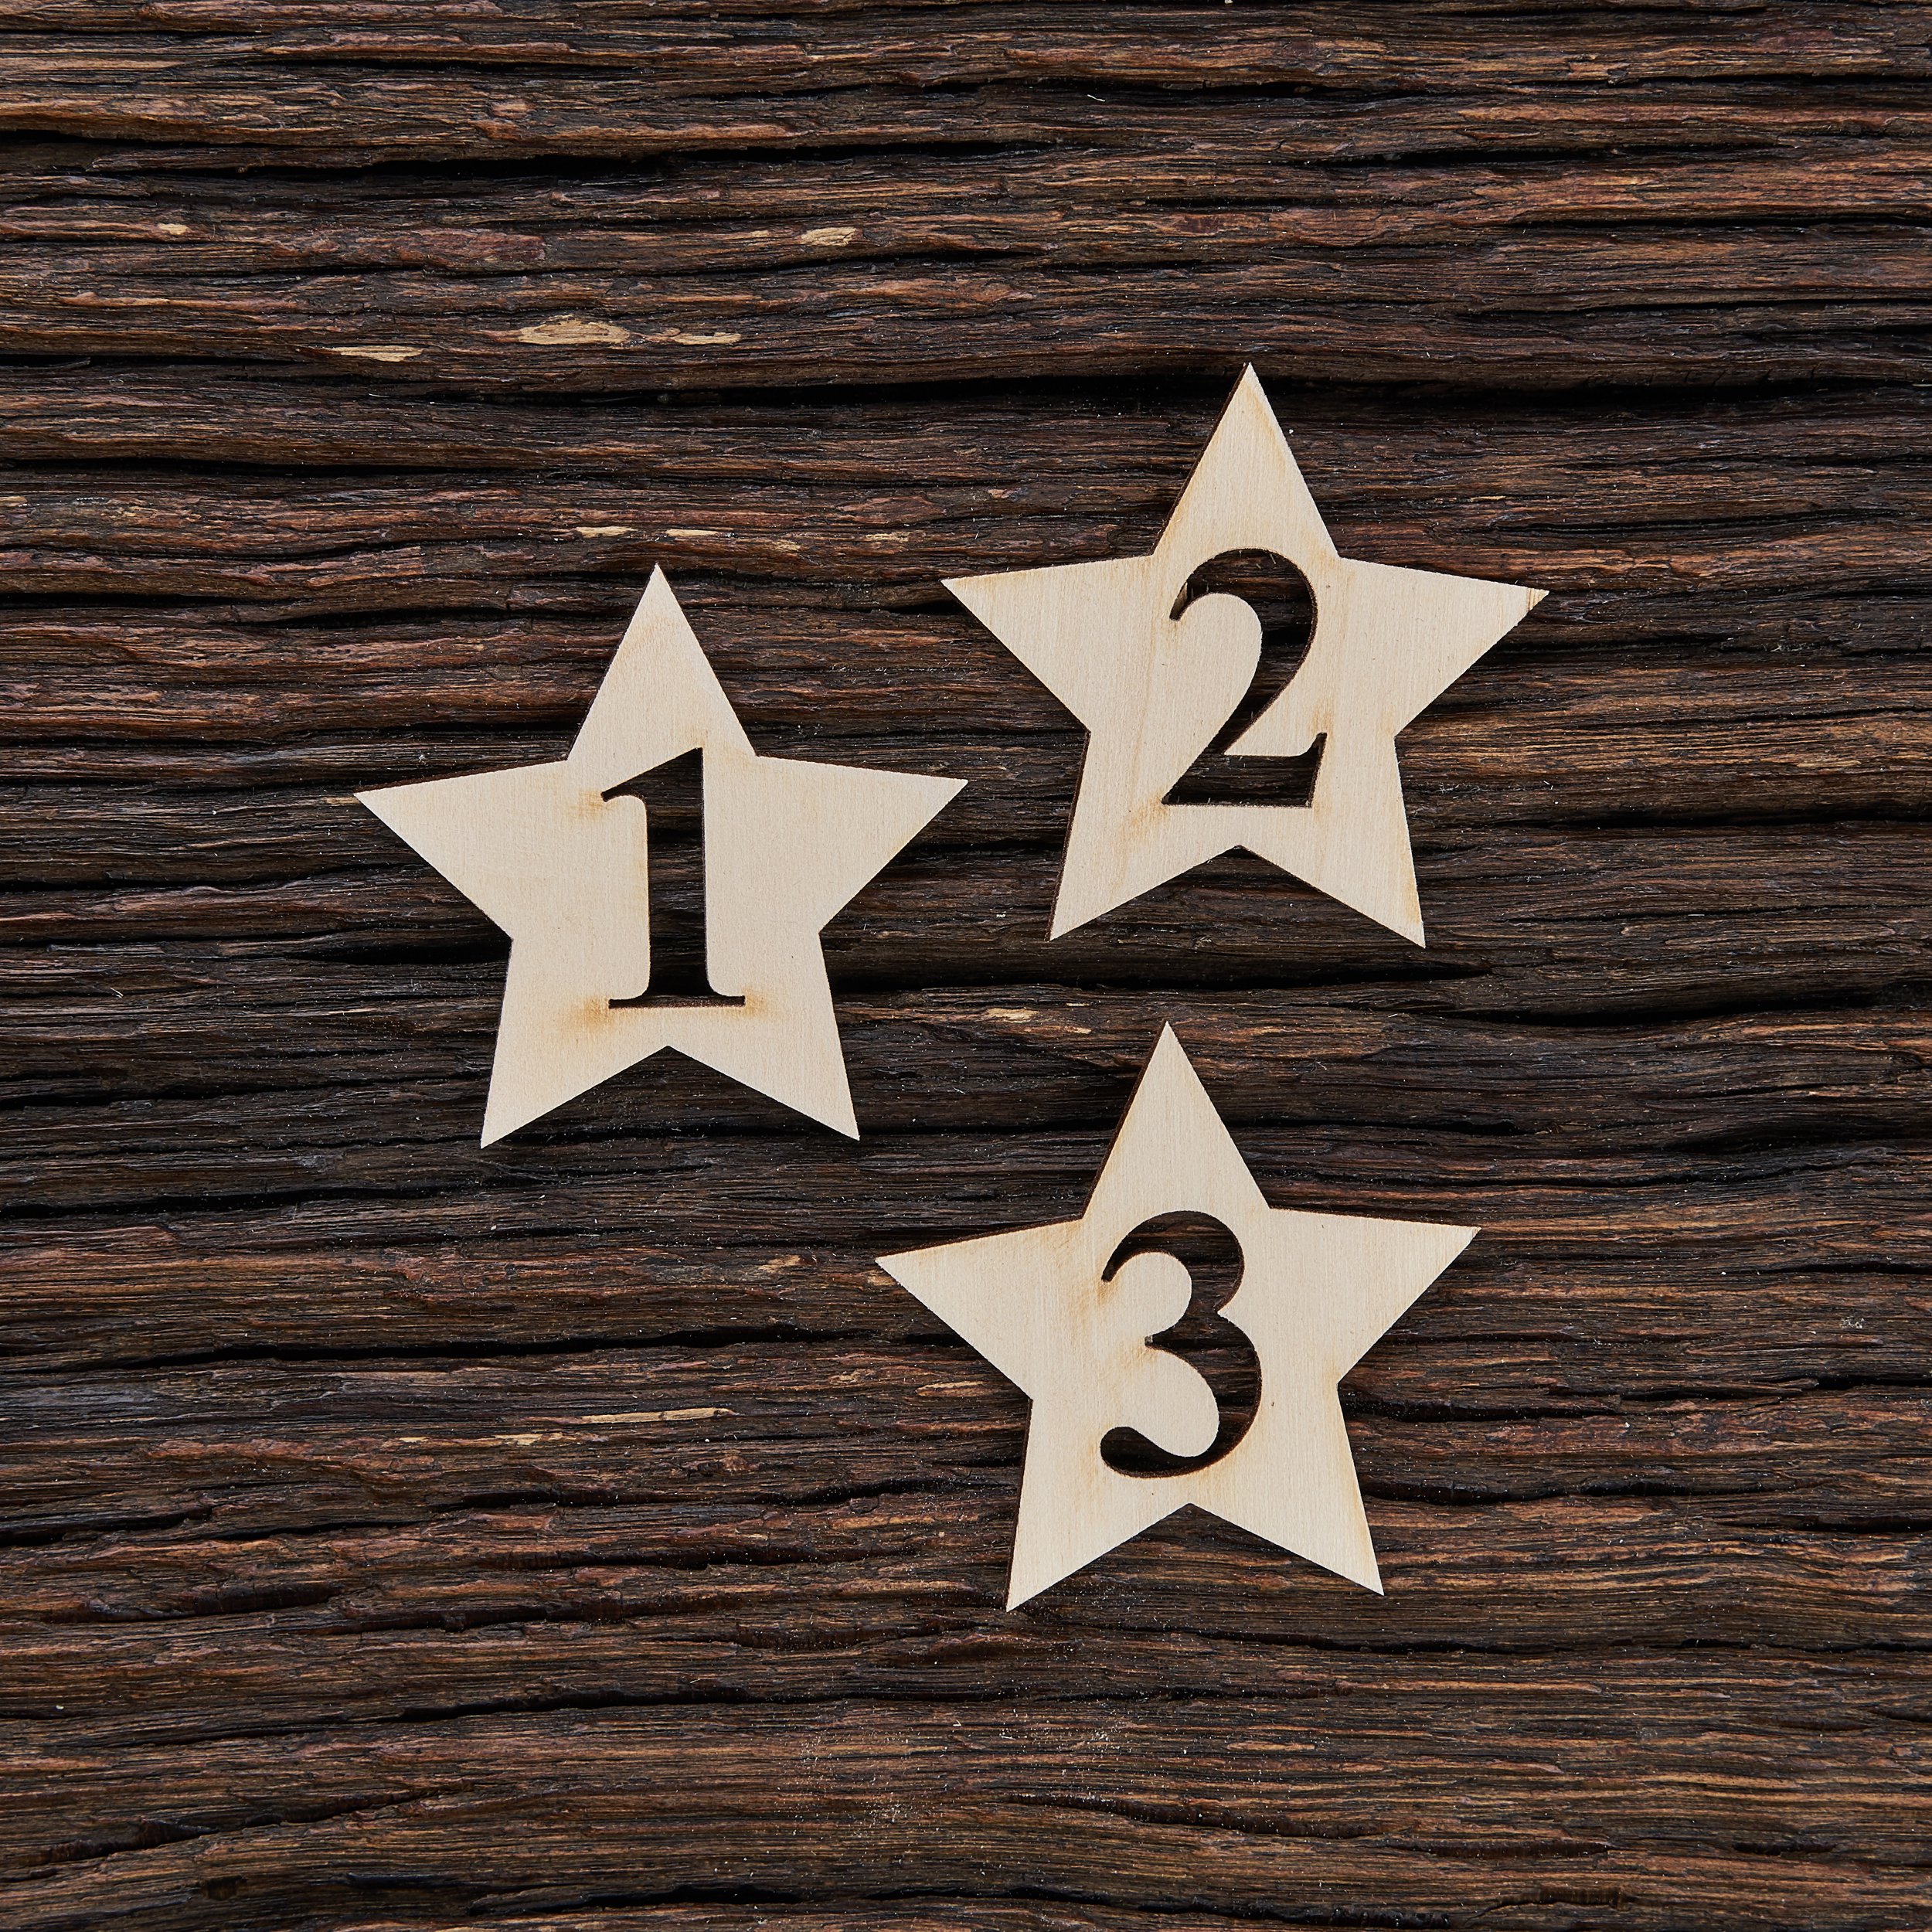 Žvaigždė su skaičiumi - medinis gaminys, pjautas lazeriu - dekoravimui ir dažymui 